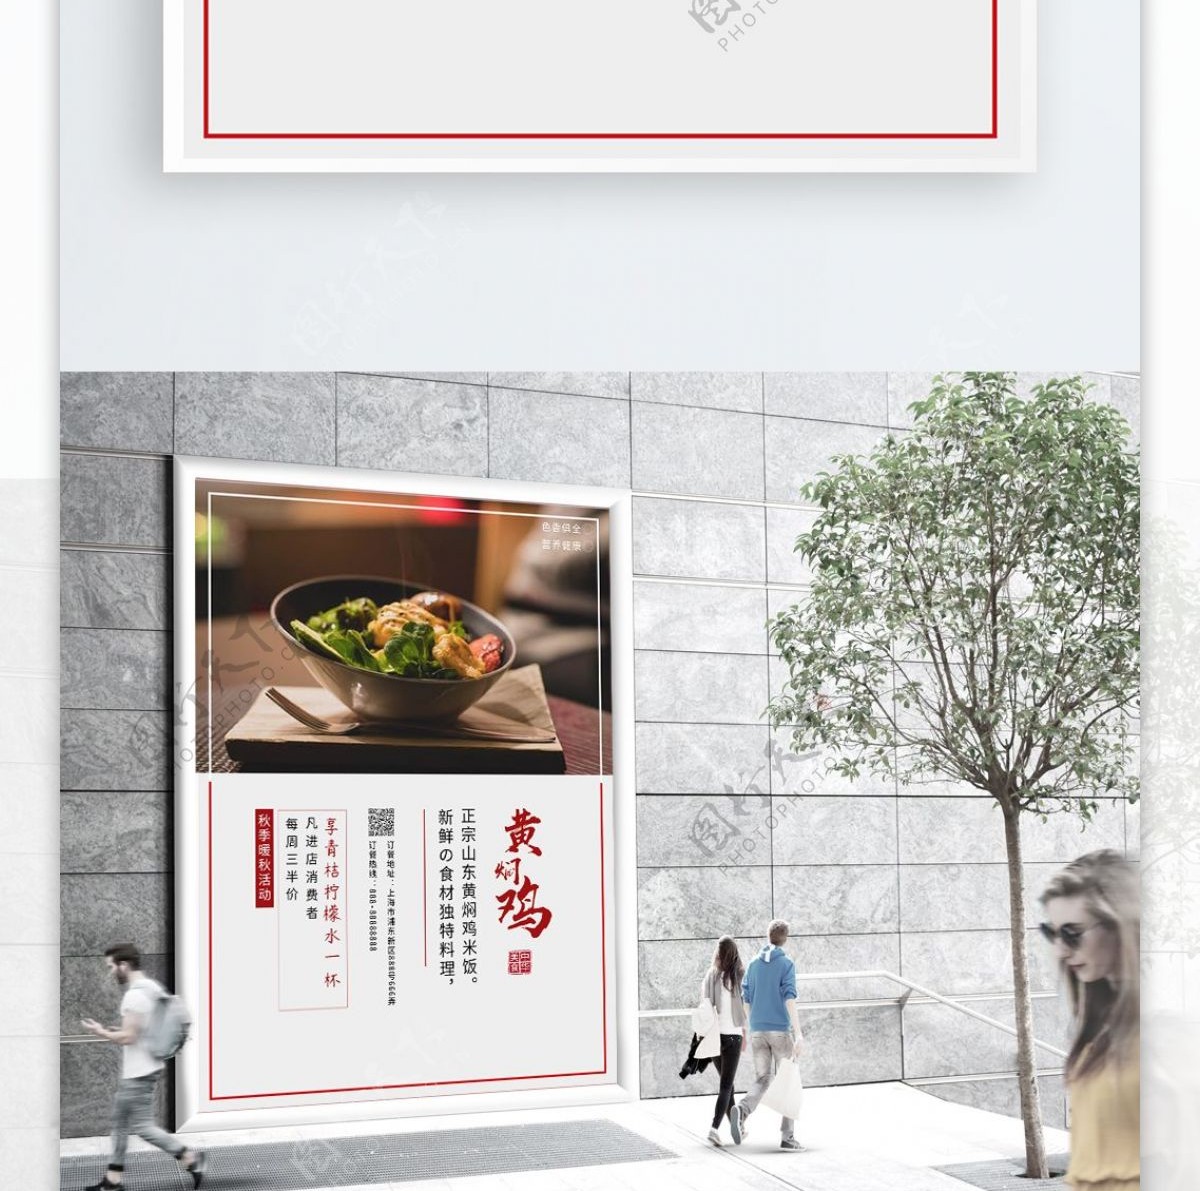 简约黄焖鸡米饭美食海报